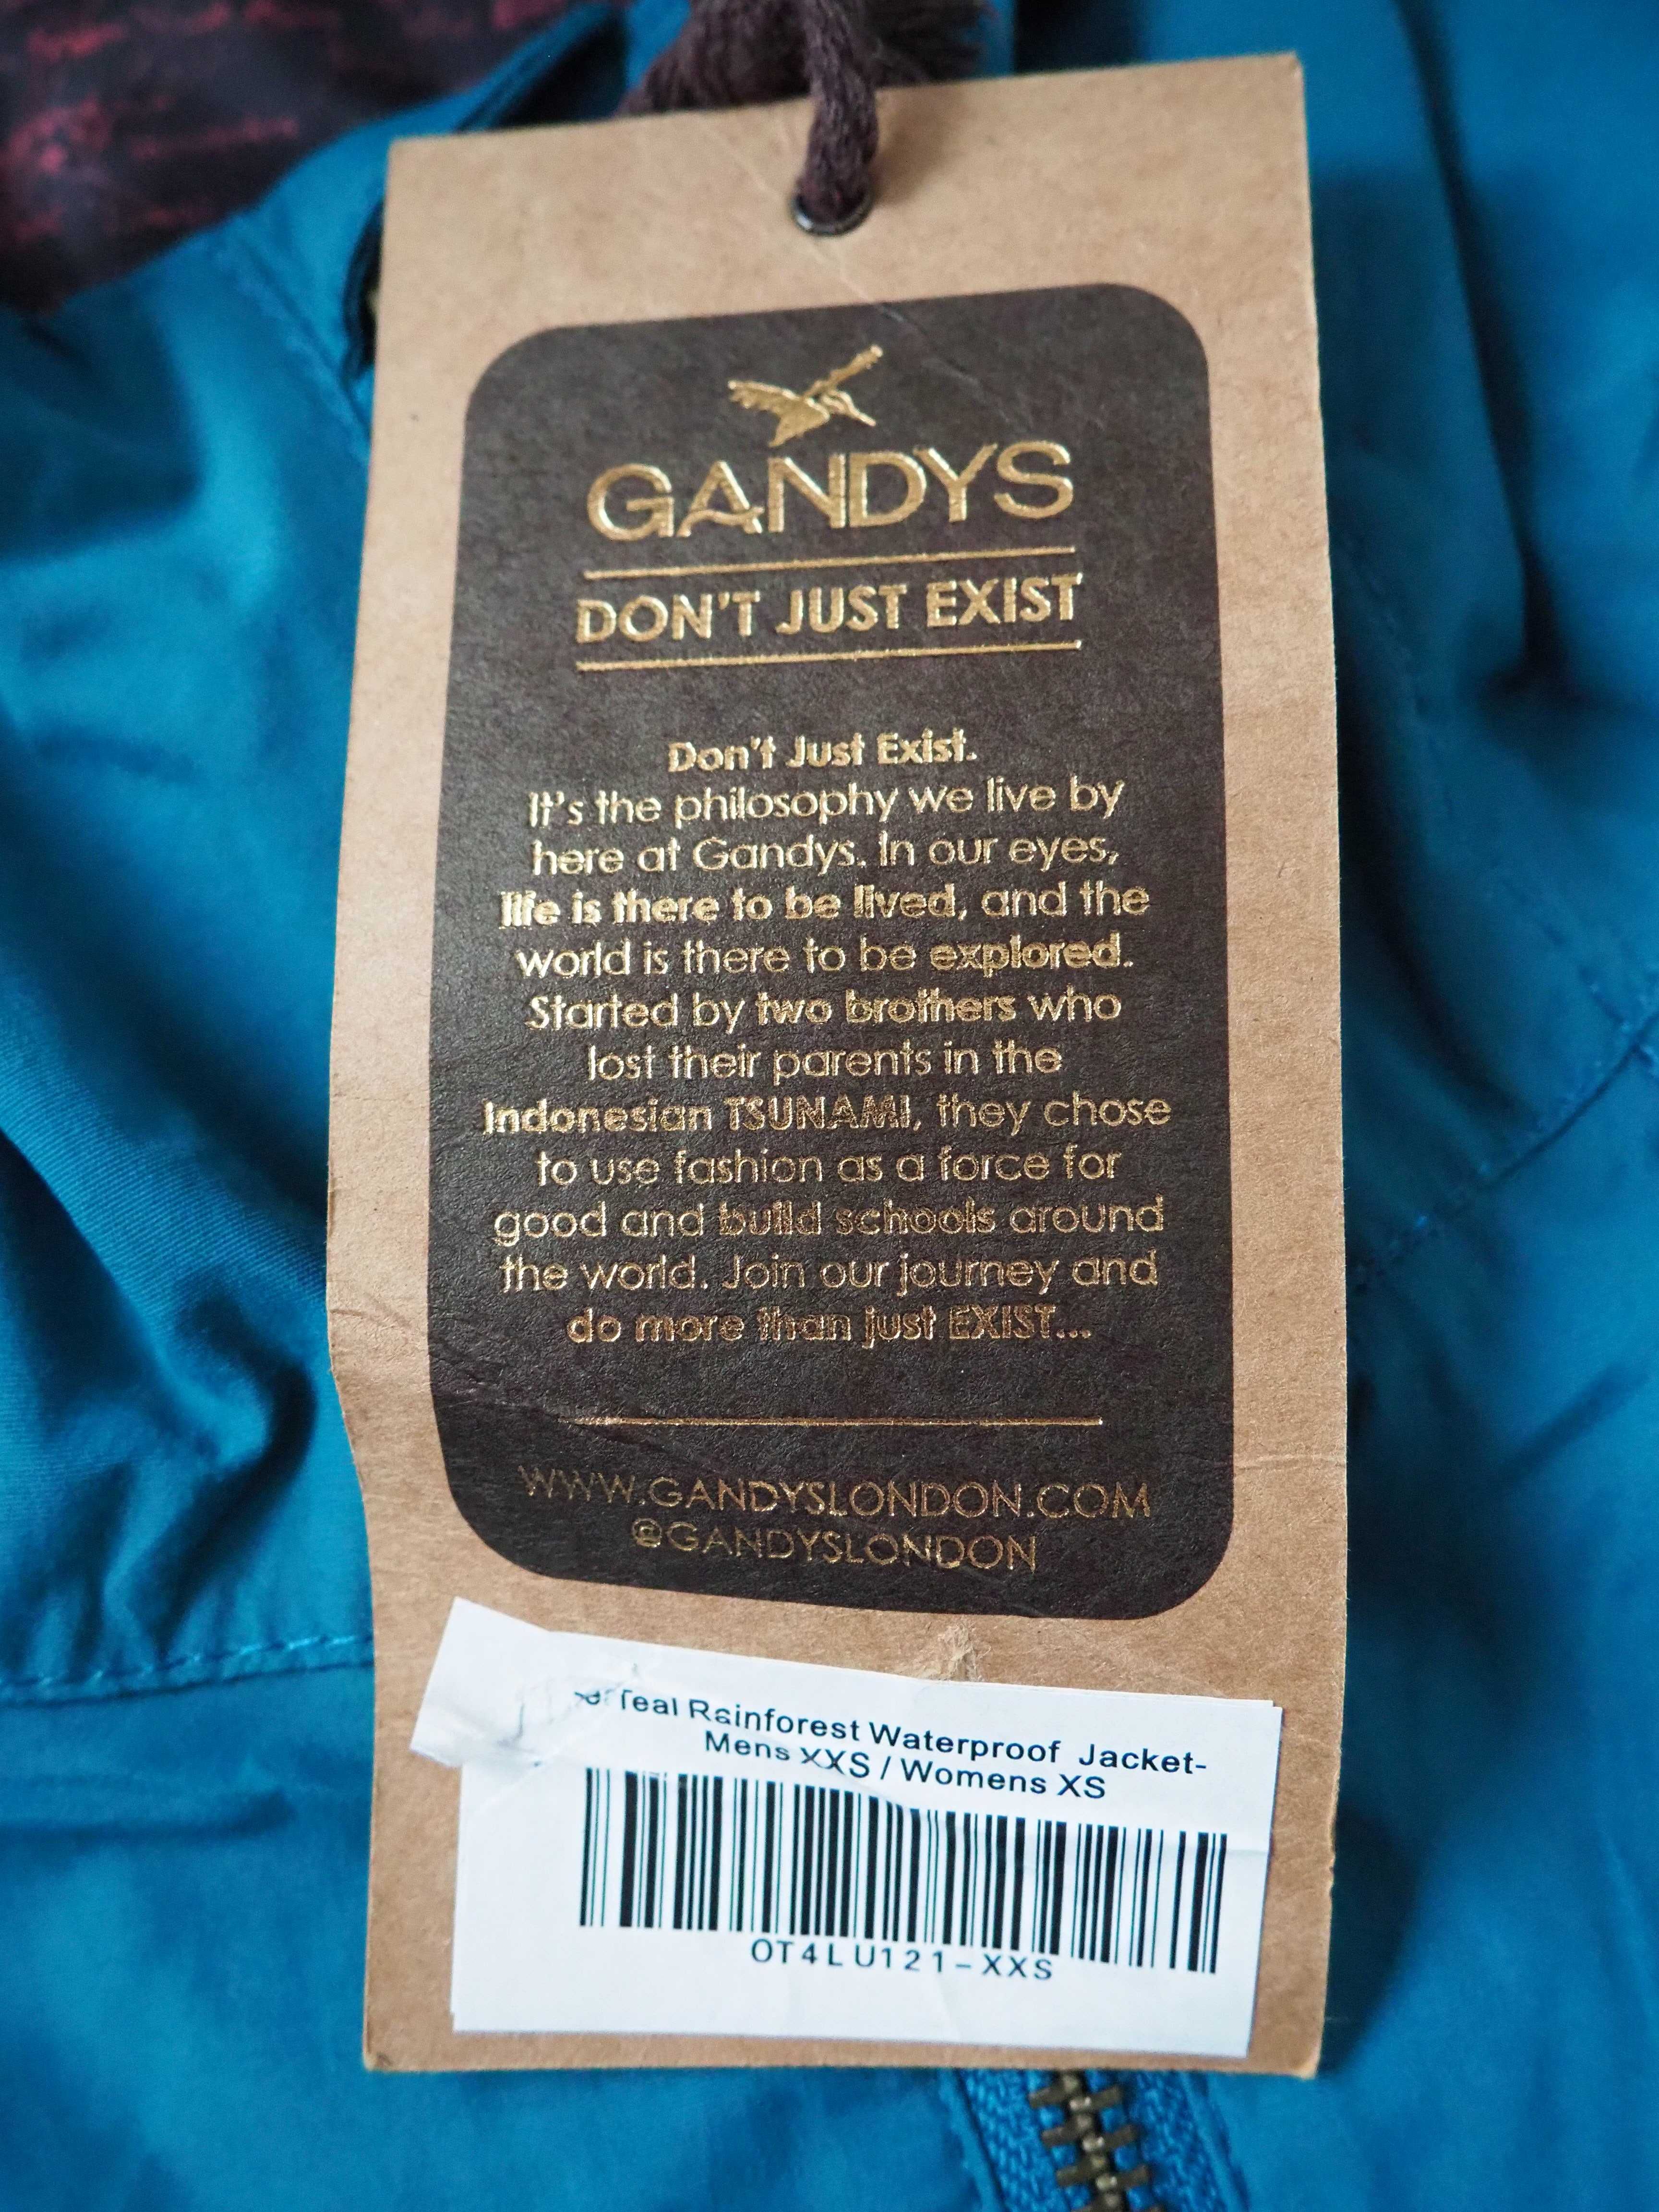 GANDYS_Teal Rainforest Waterproof Jacket__S